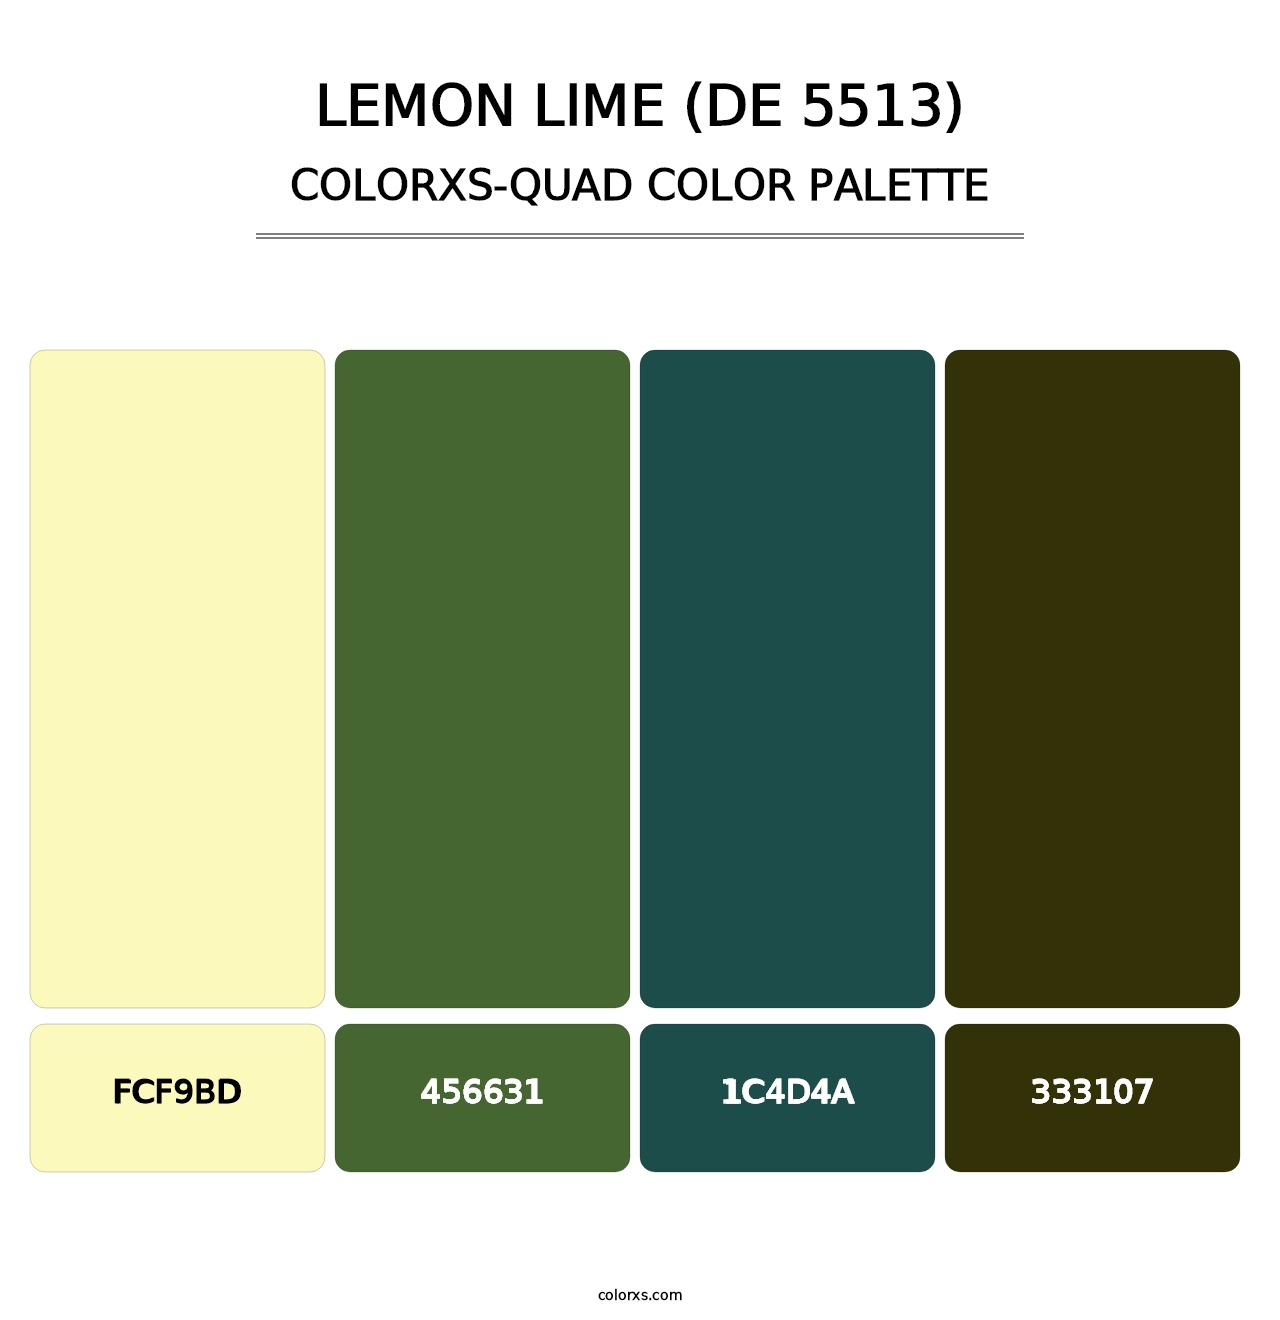 Lemon Lime (DE 5513) - Colorxs Quad Palette